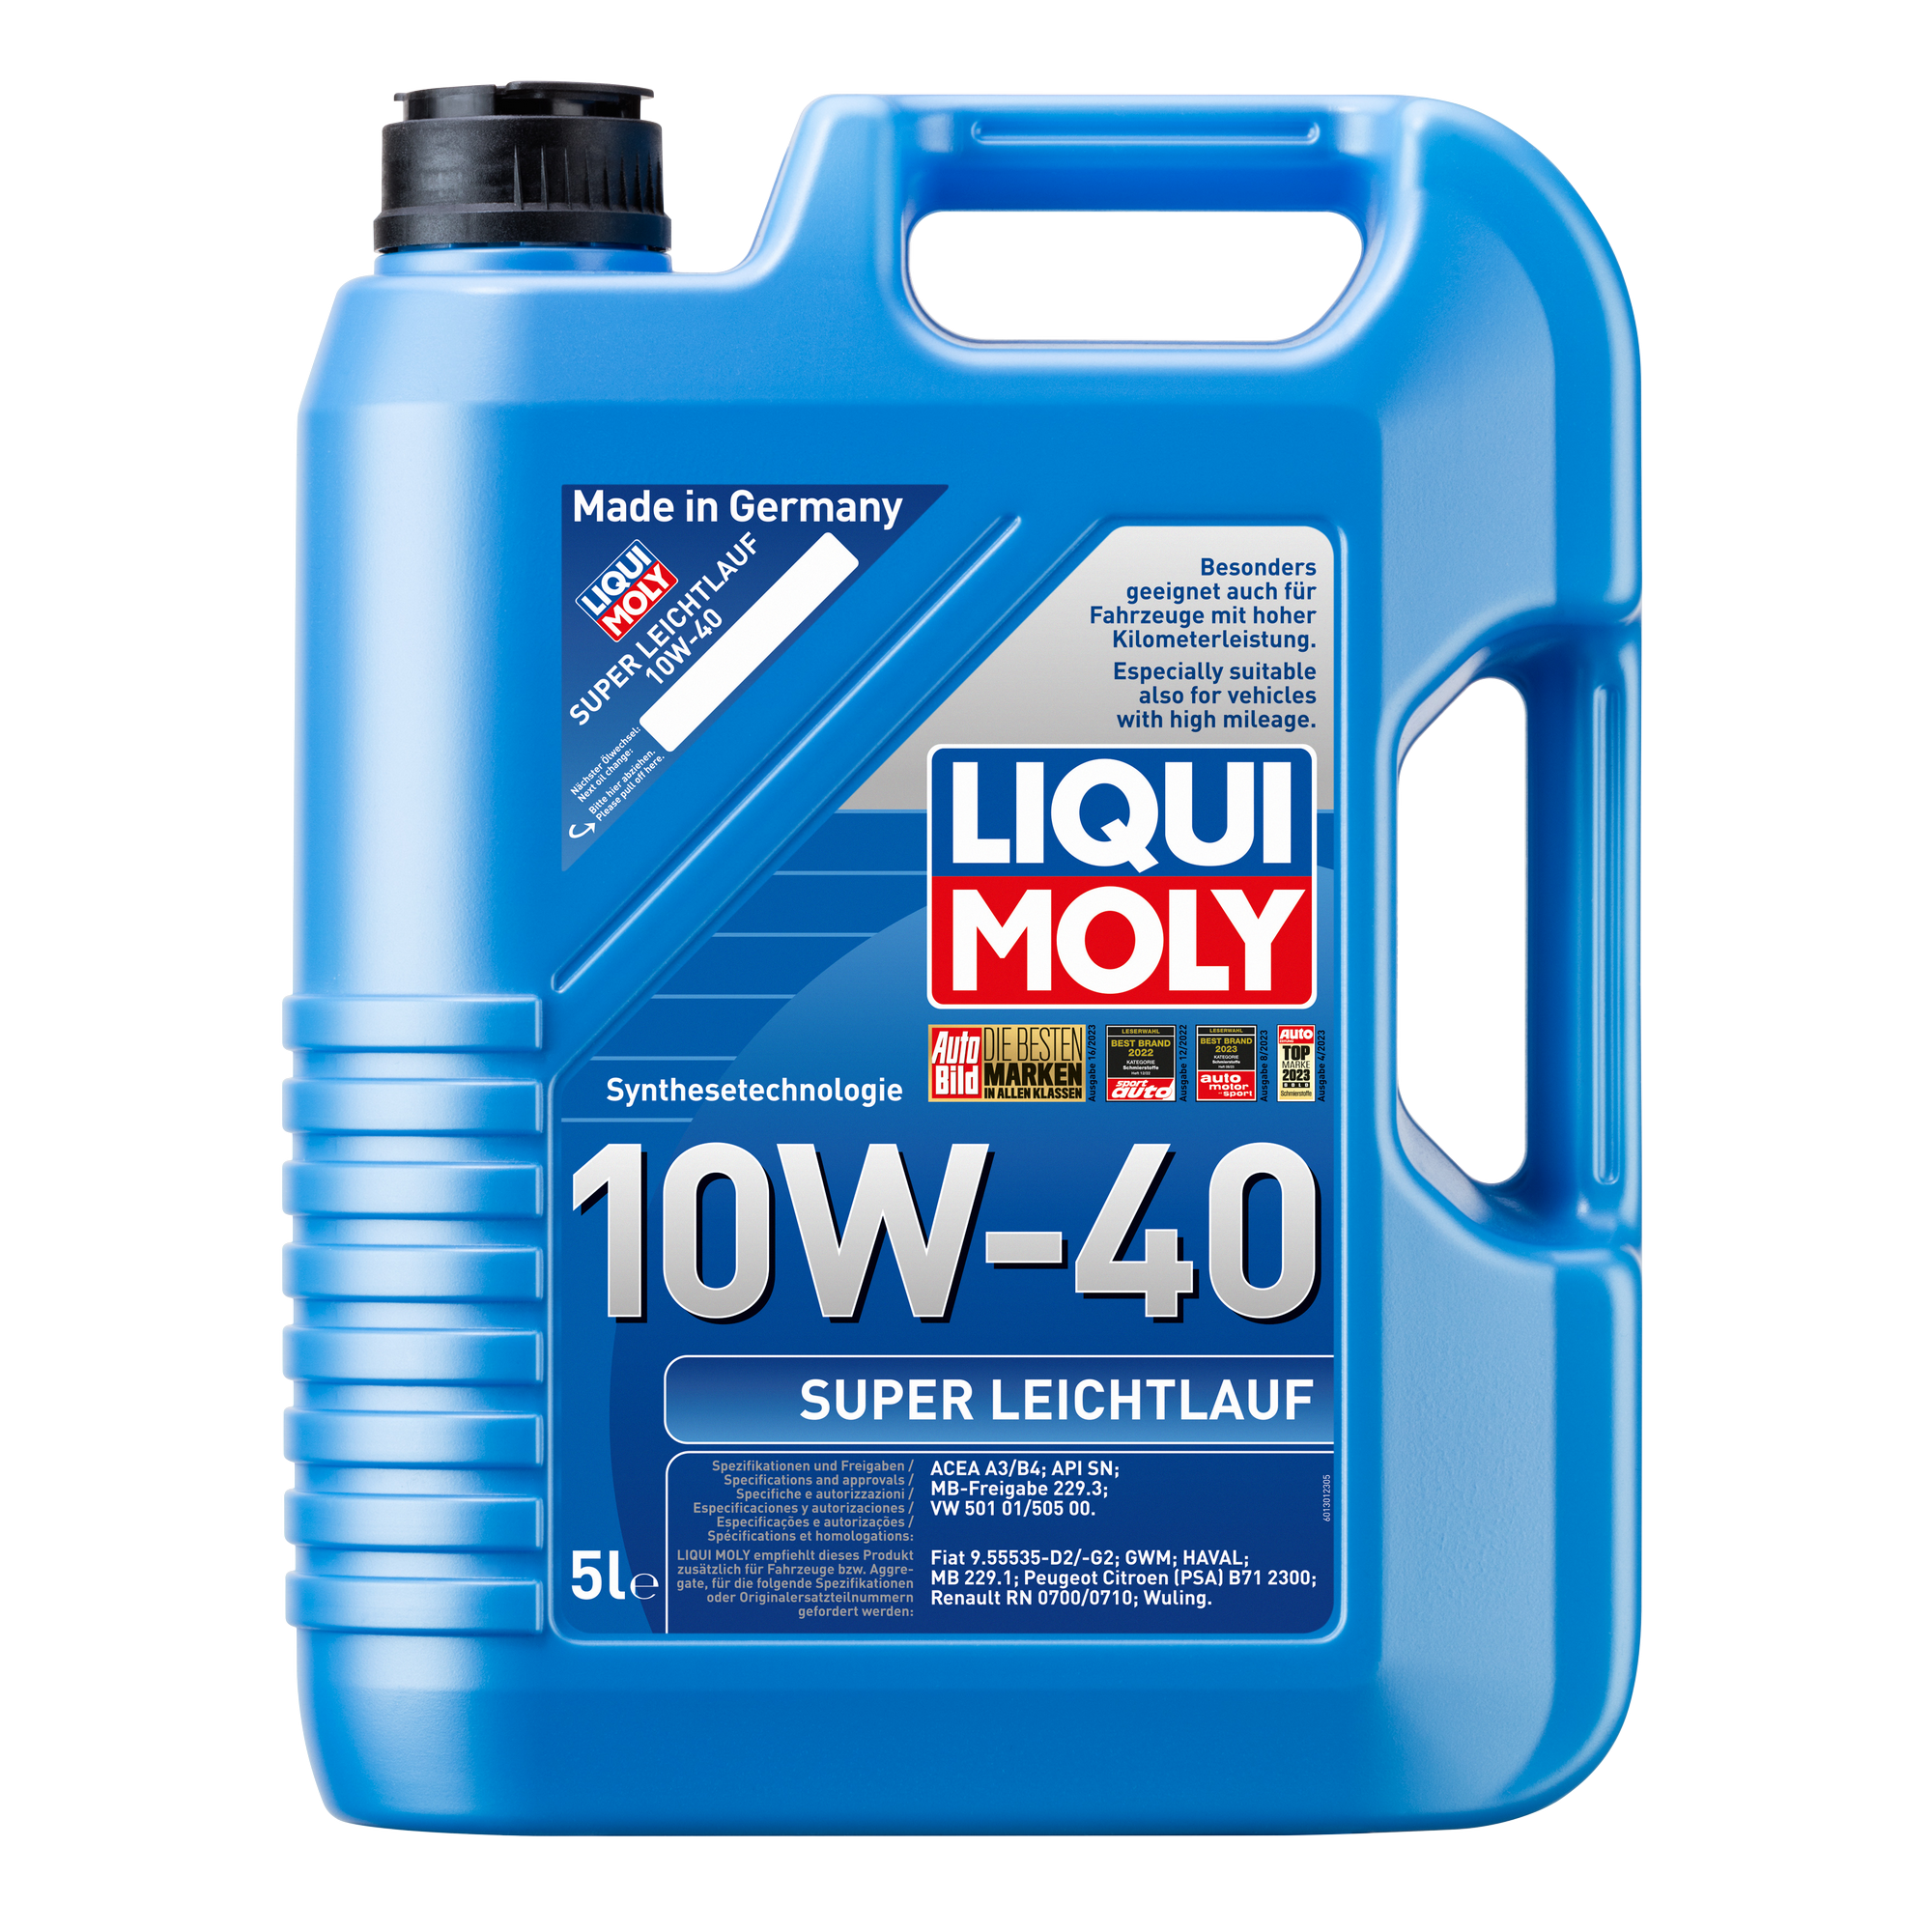 Leichtlauf-Motoröl '10W-40' 5 l + product picture